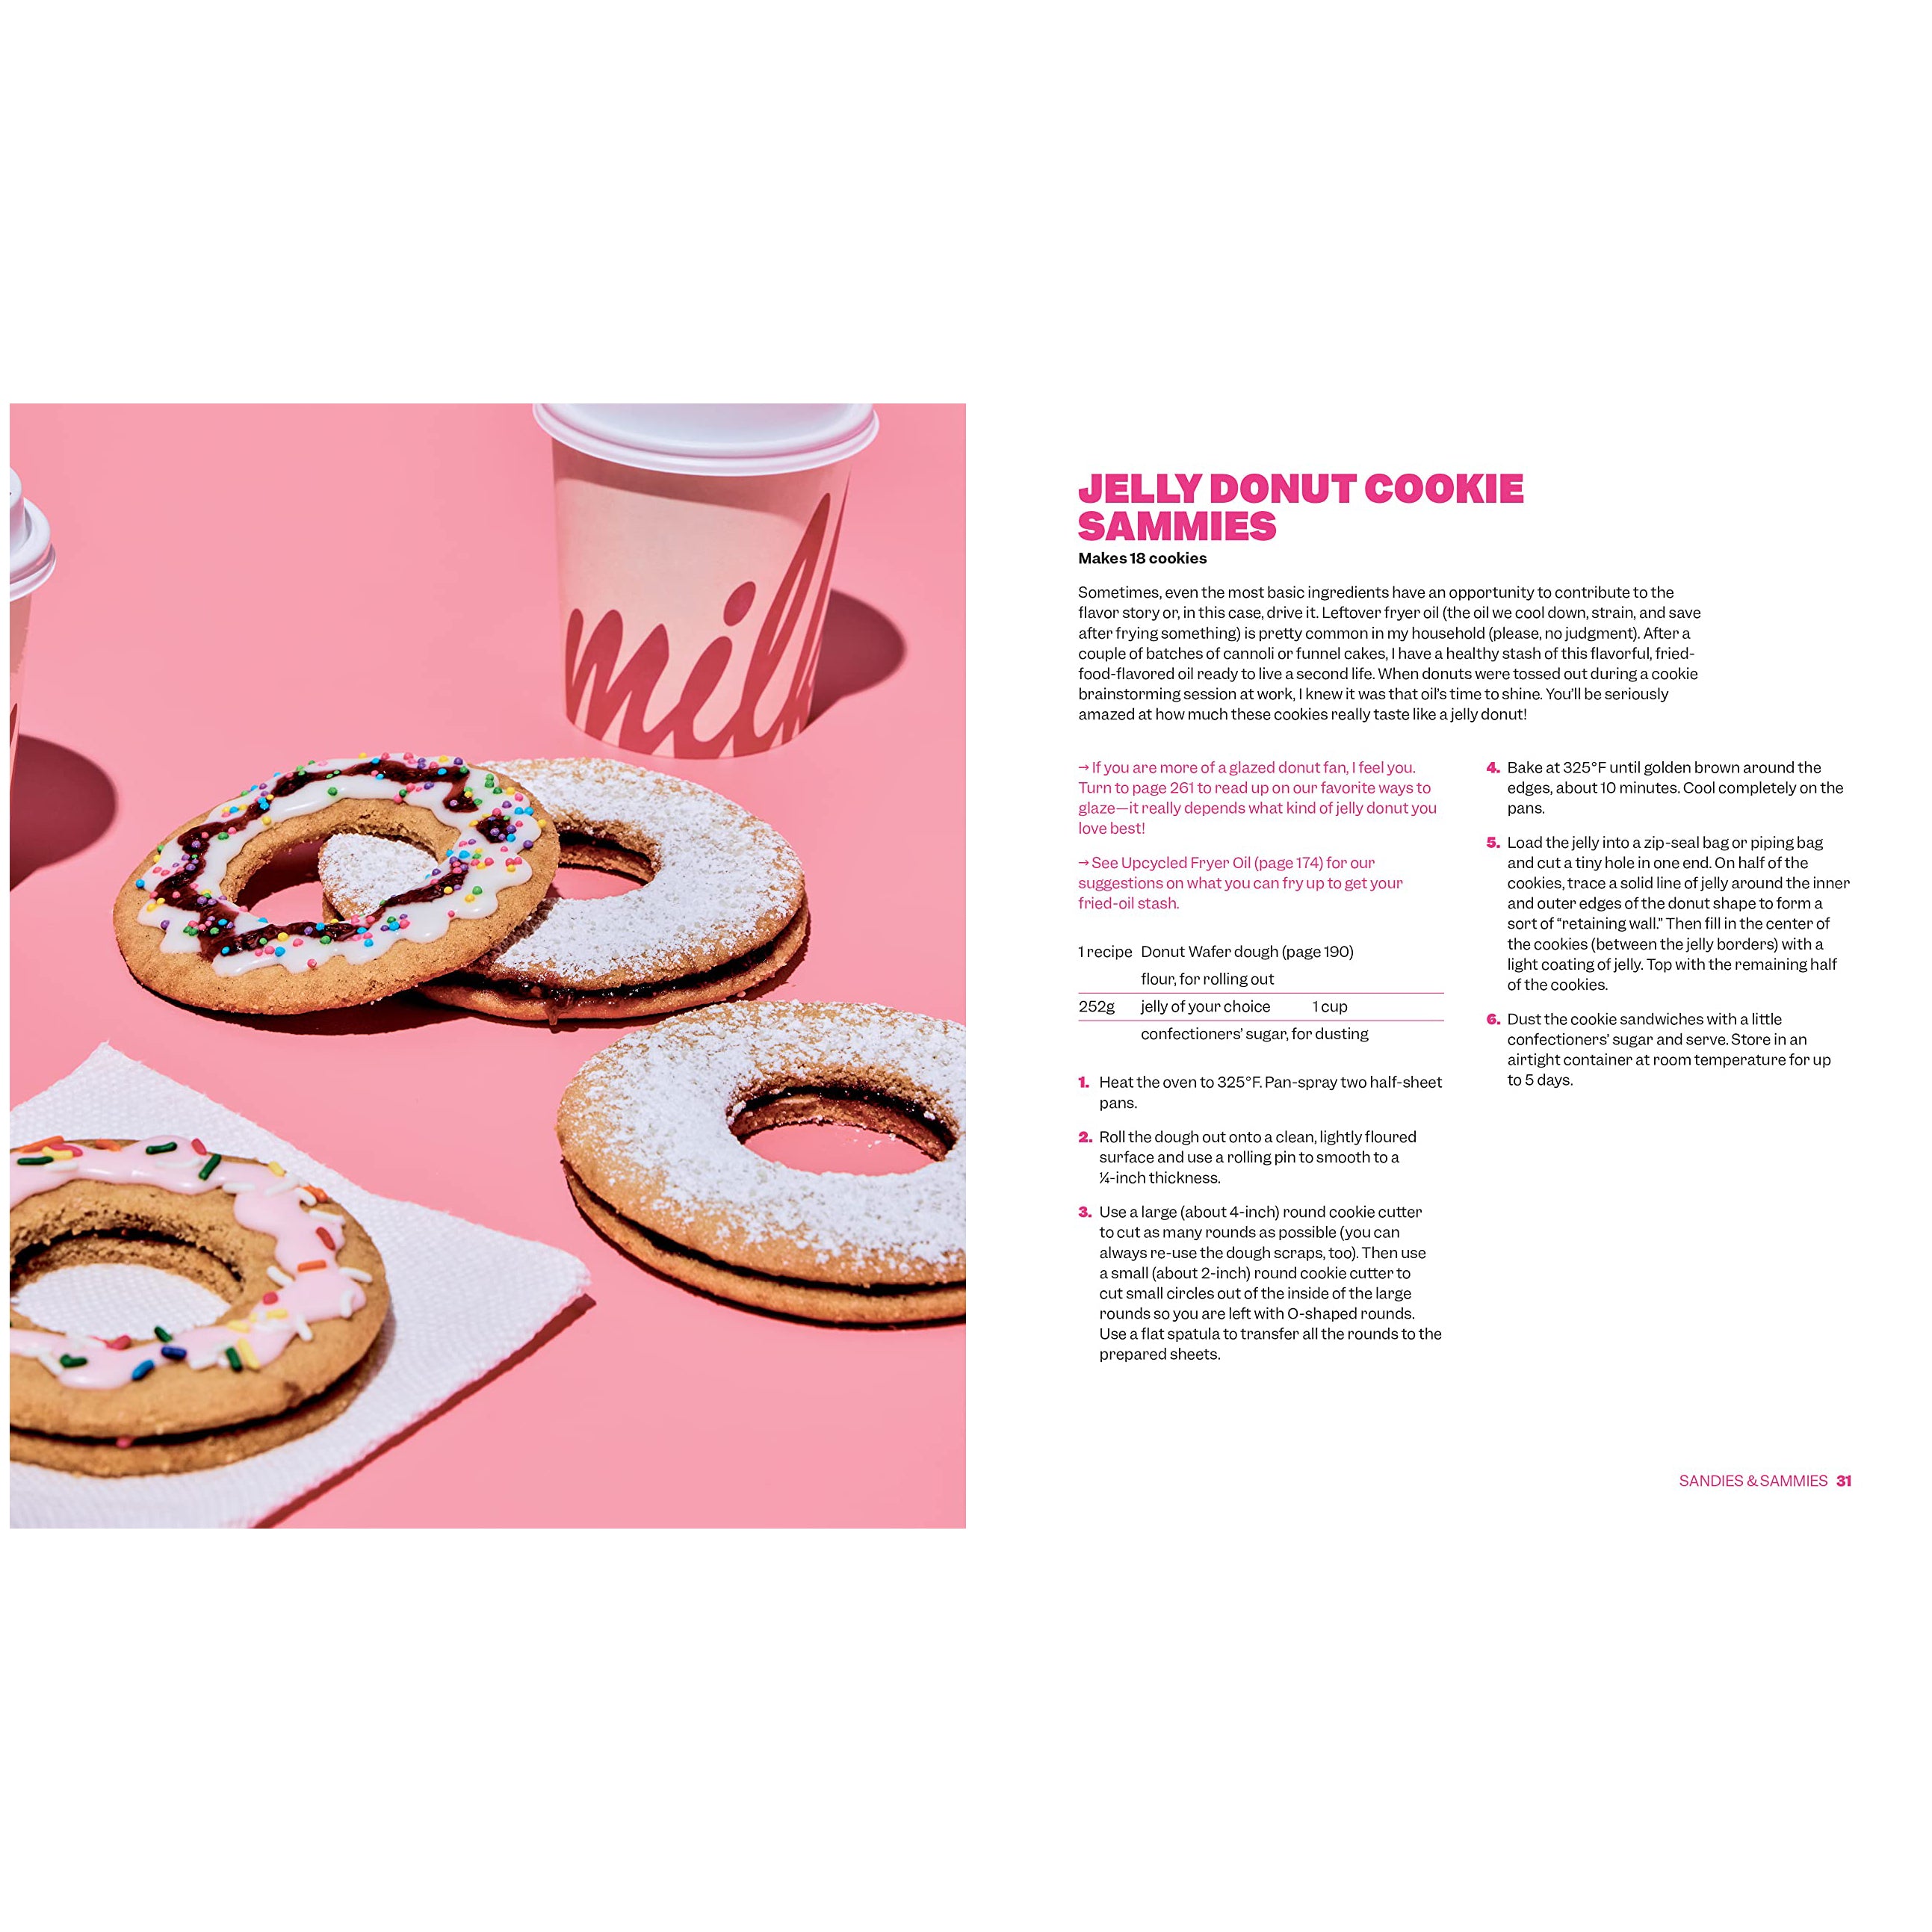 All About Cookies: A Milk Bar Baking Book (EN)